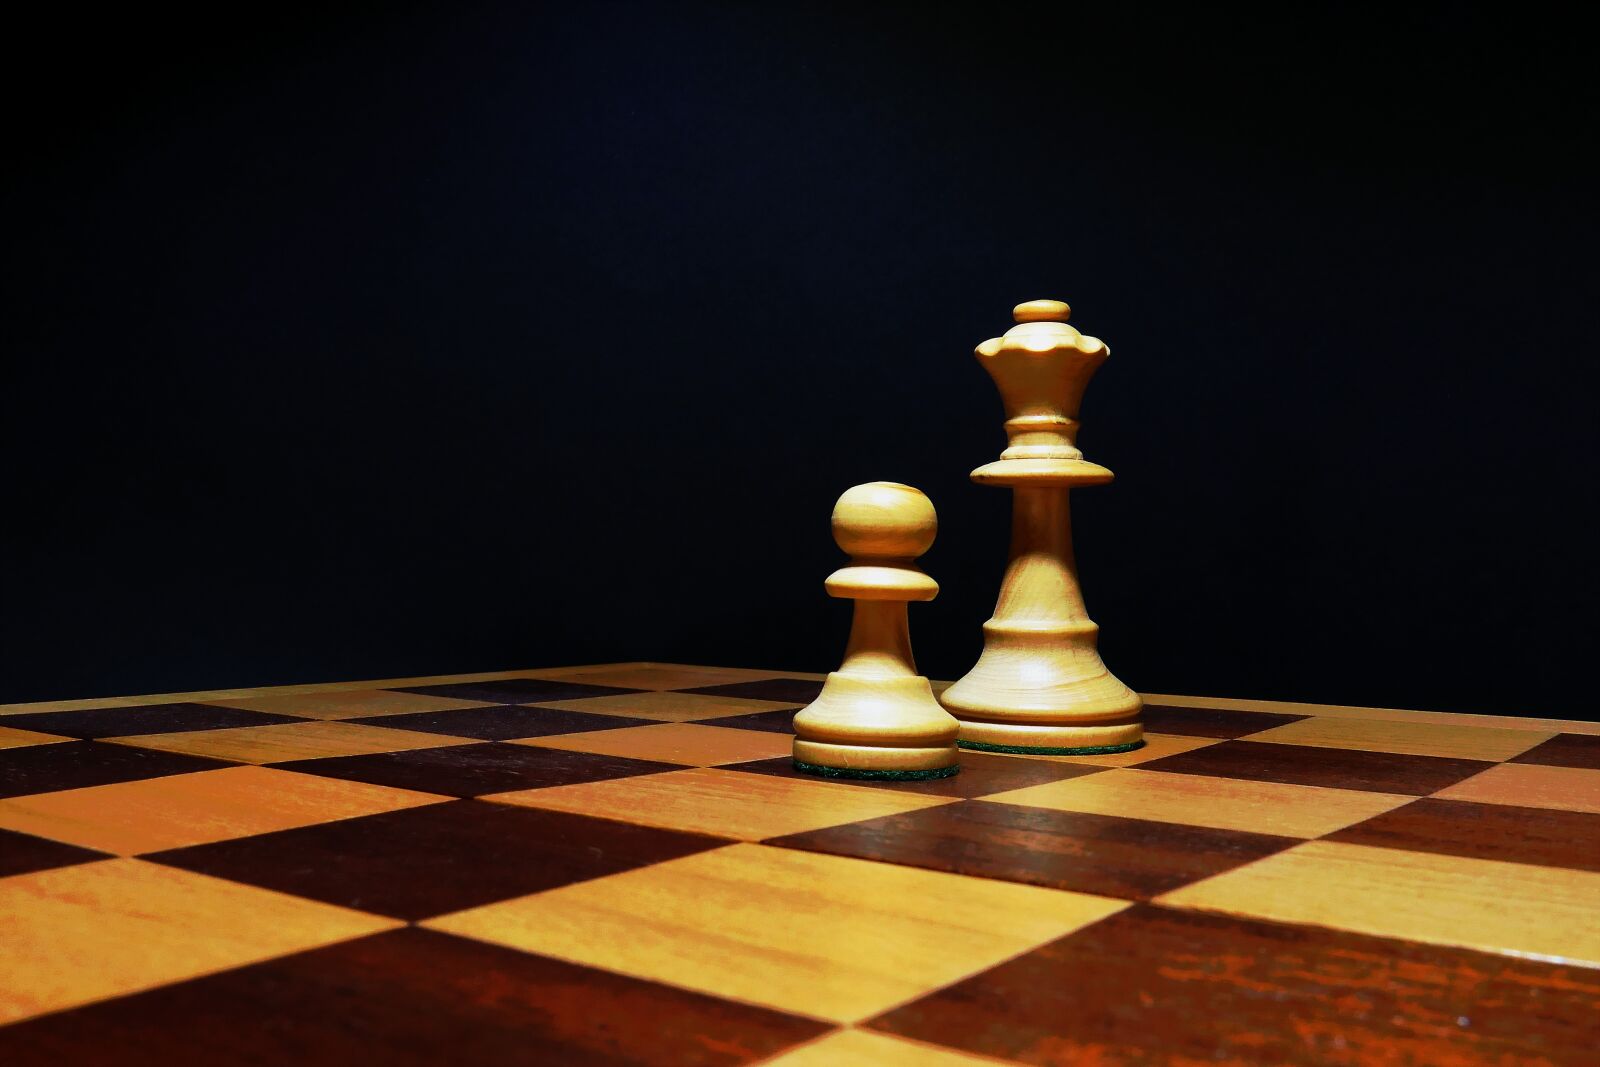 Panasonic Lumix DMC-LX10 (Lumix DMC-LX15) sample photo. Chess, strategy, chess board photography